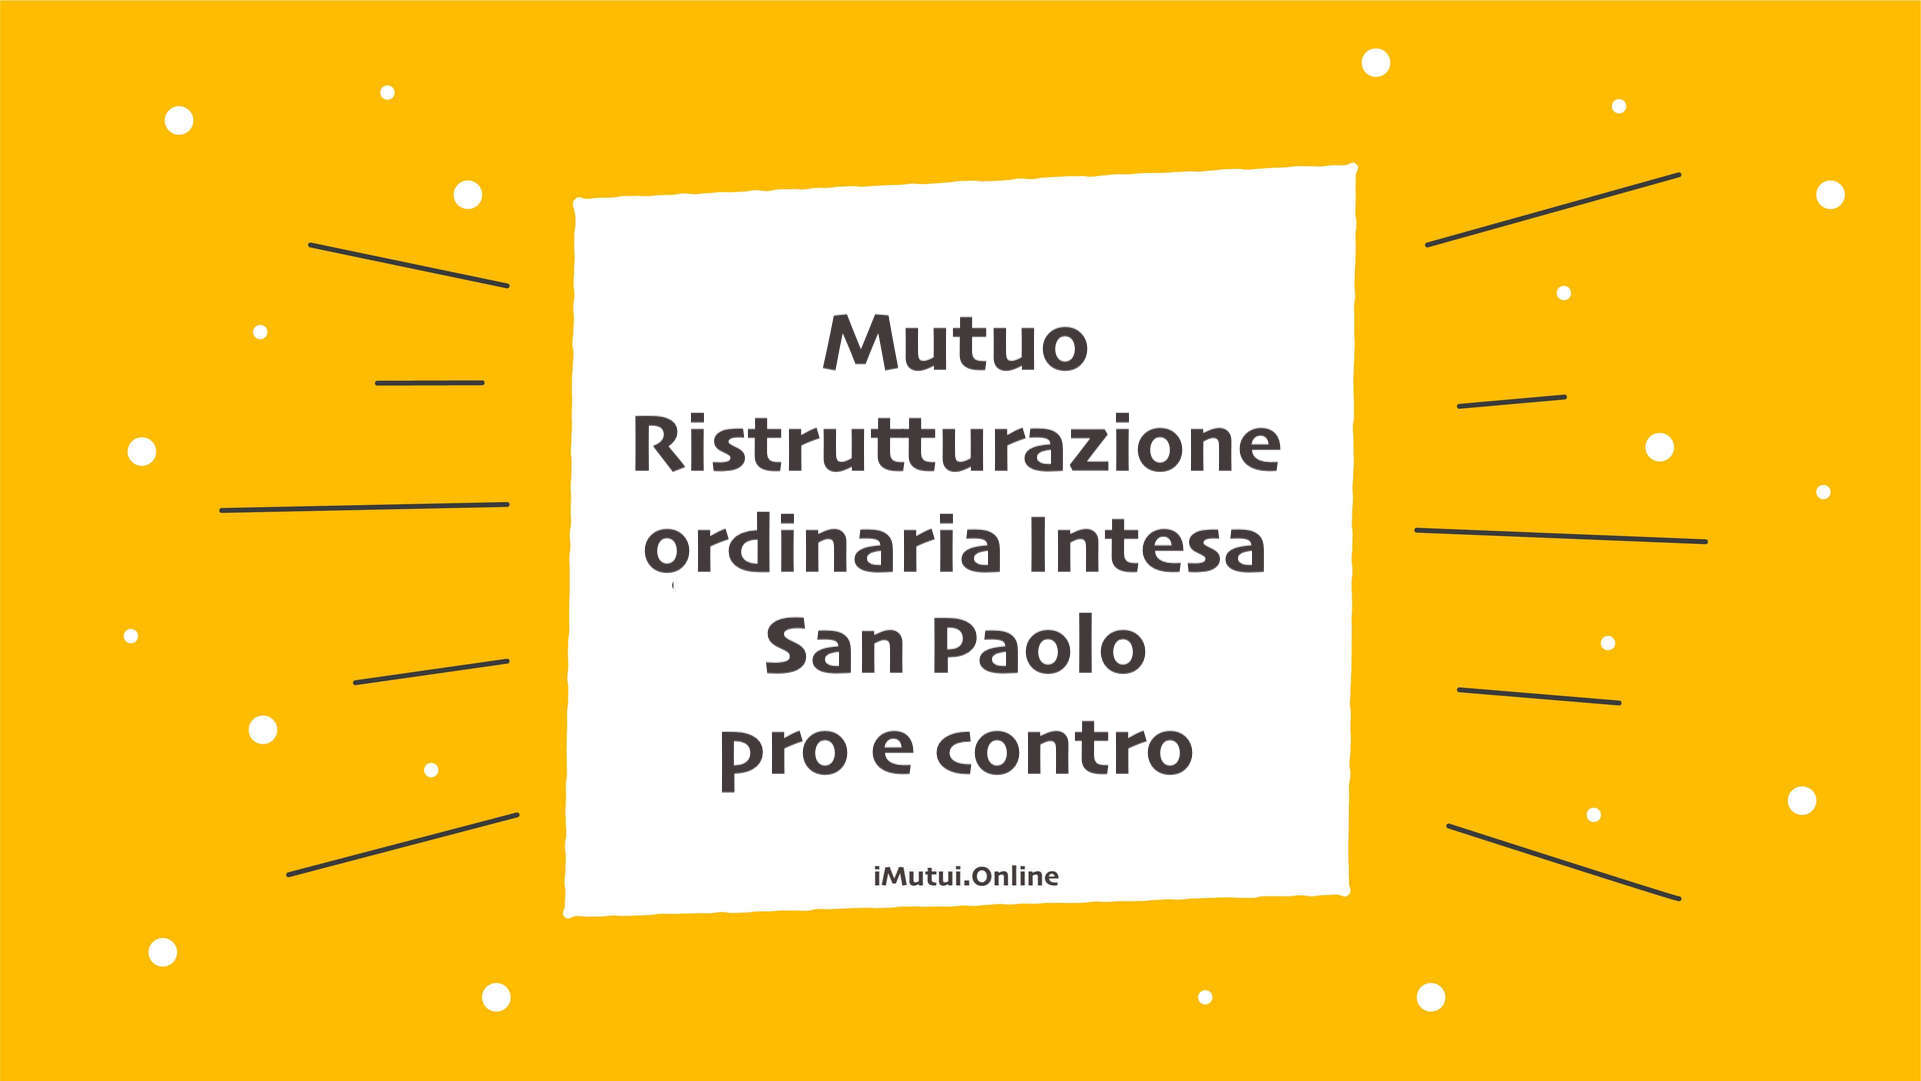 Mutuo Ristrutturazione ordinaria Intesa San Paolo